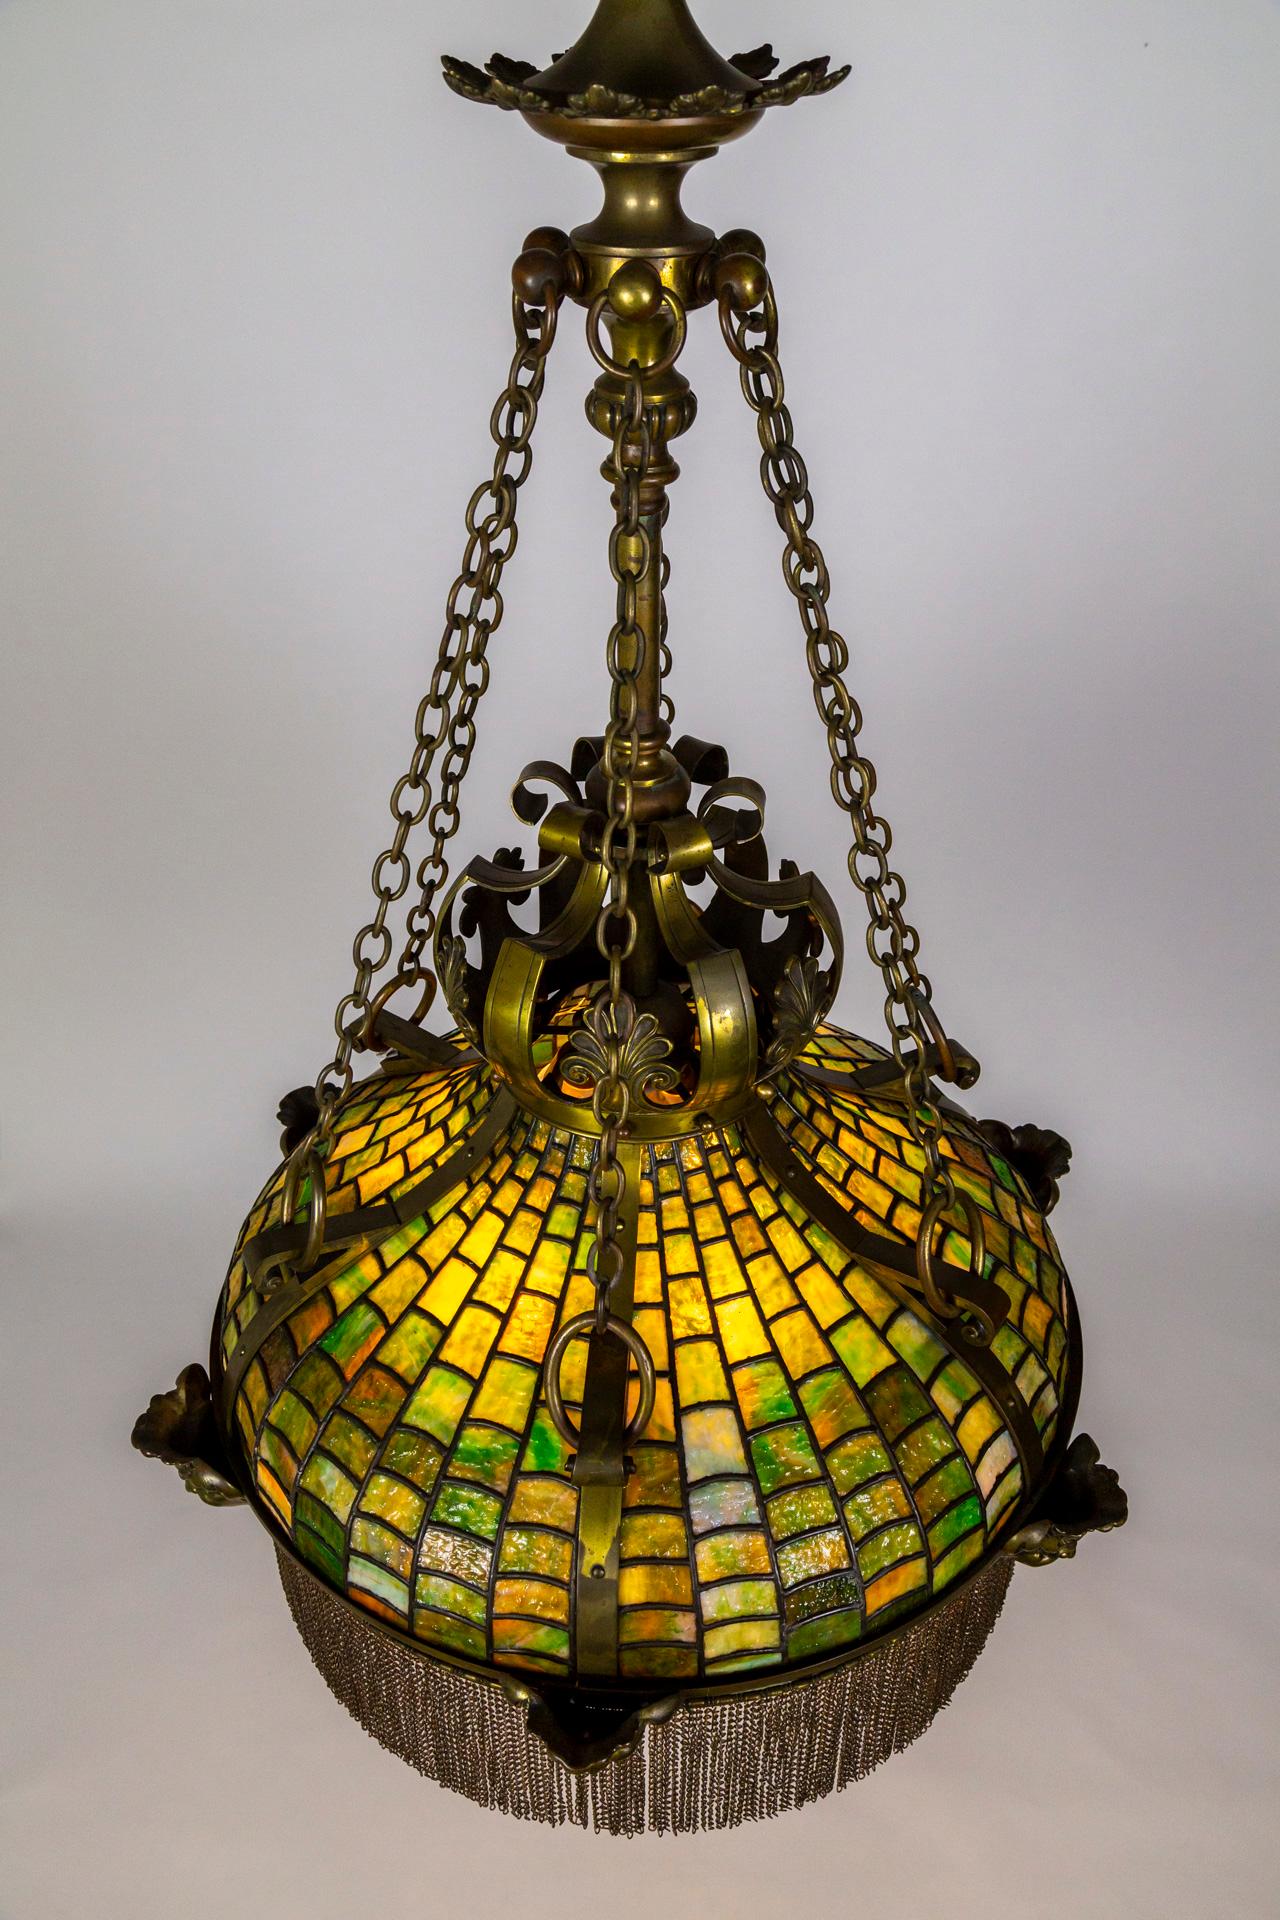 Lampe suspendue en verre de scories de style mosaïque, réalisée à la fin du XIXe siècle, en forme de parapluie couronné avec de subtiles ondulations ; excellent travail du plomb - le verre lui-même est texturé et complexe, en tailles graduées avec